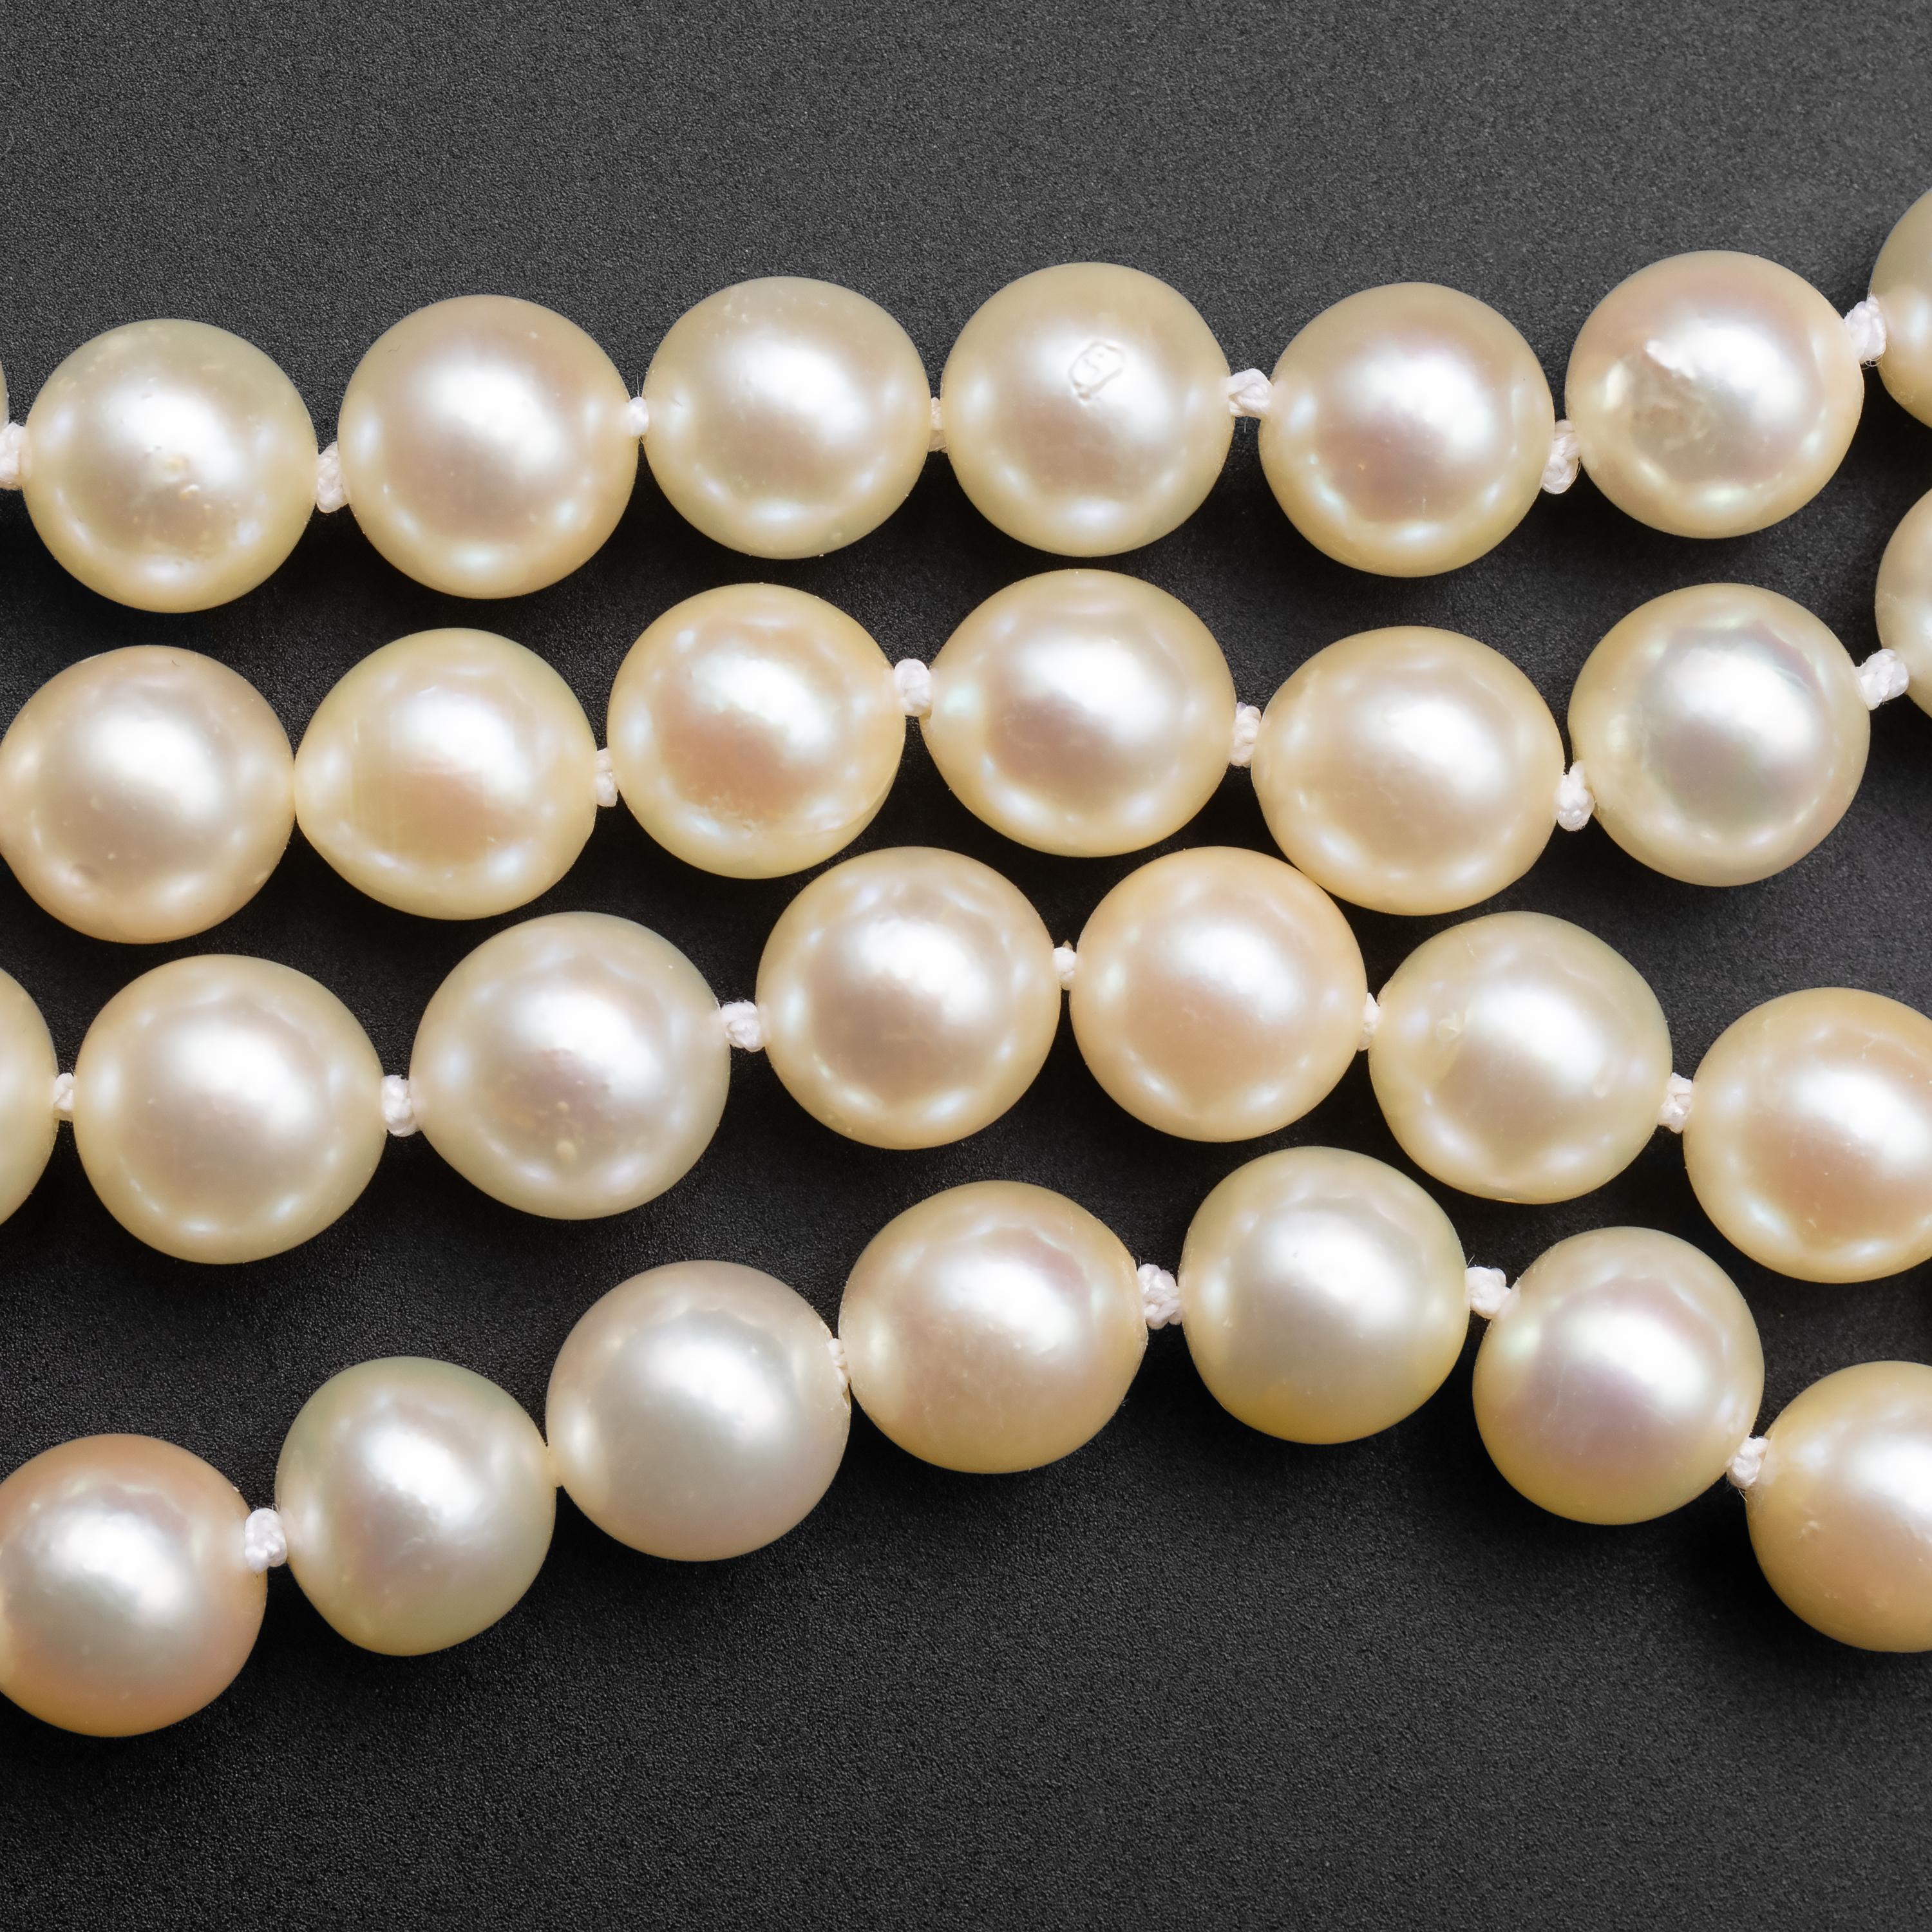 vintage pearls necklace